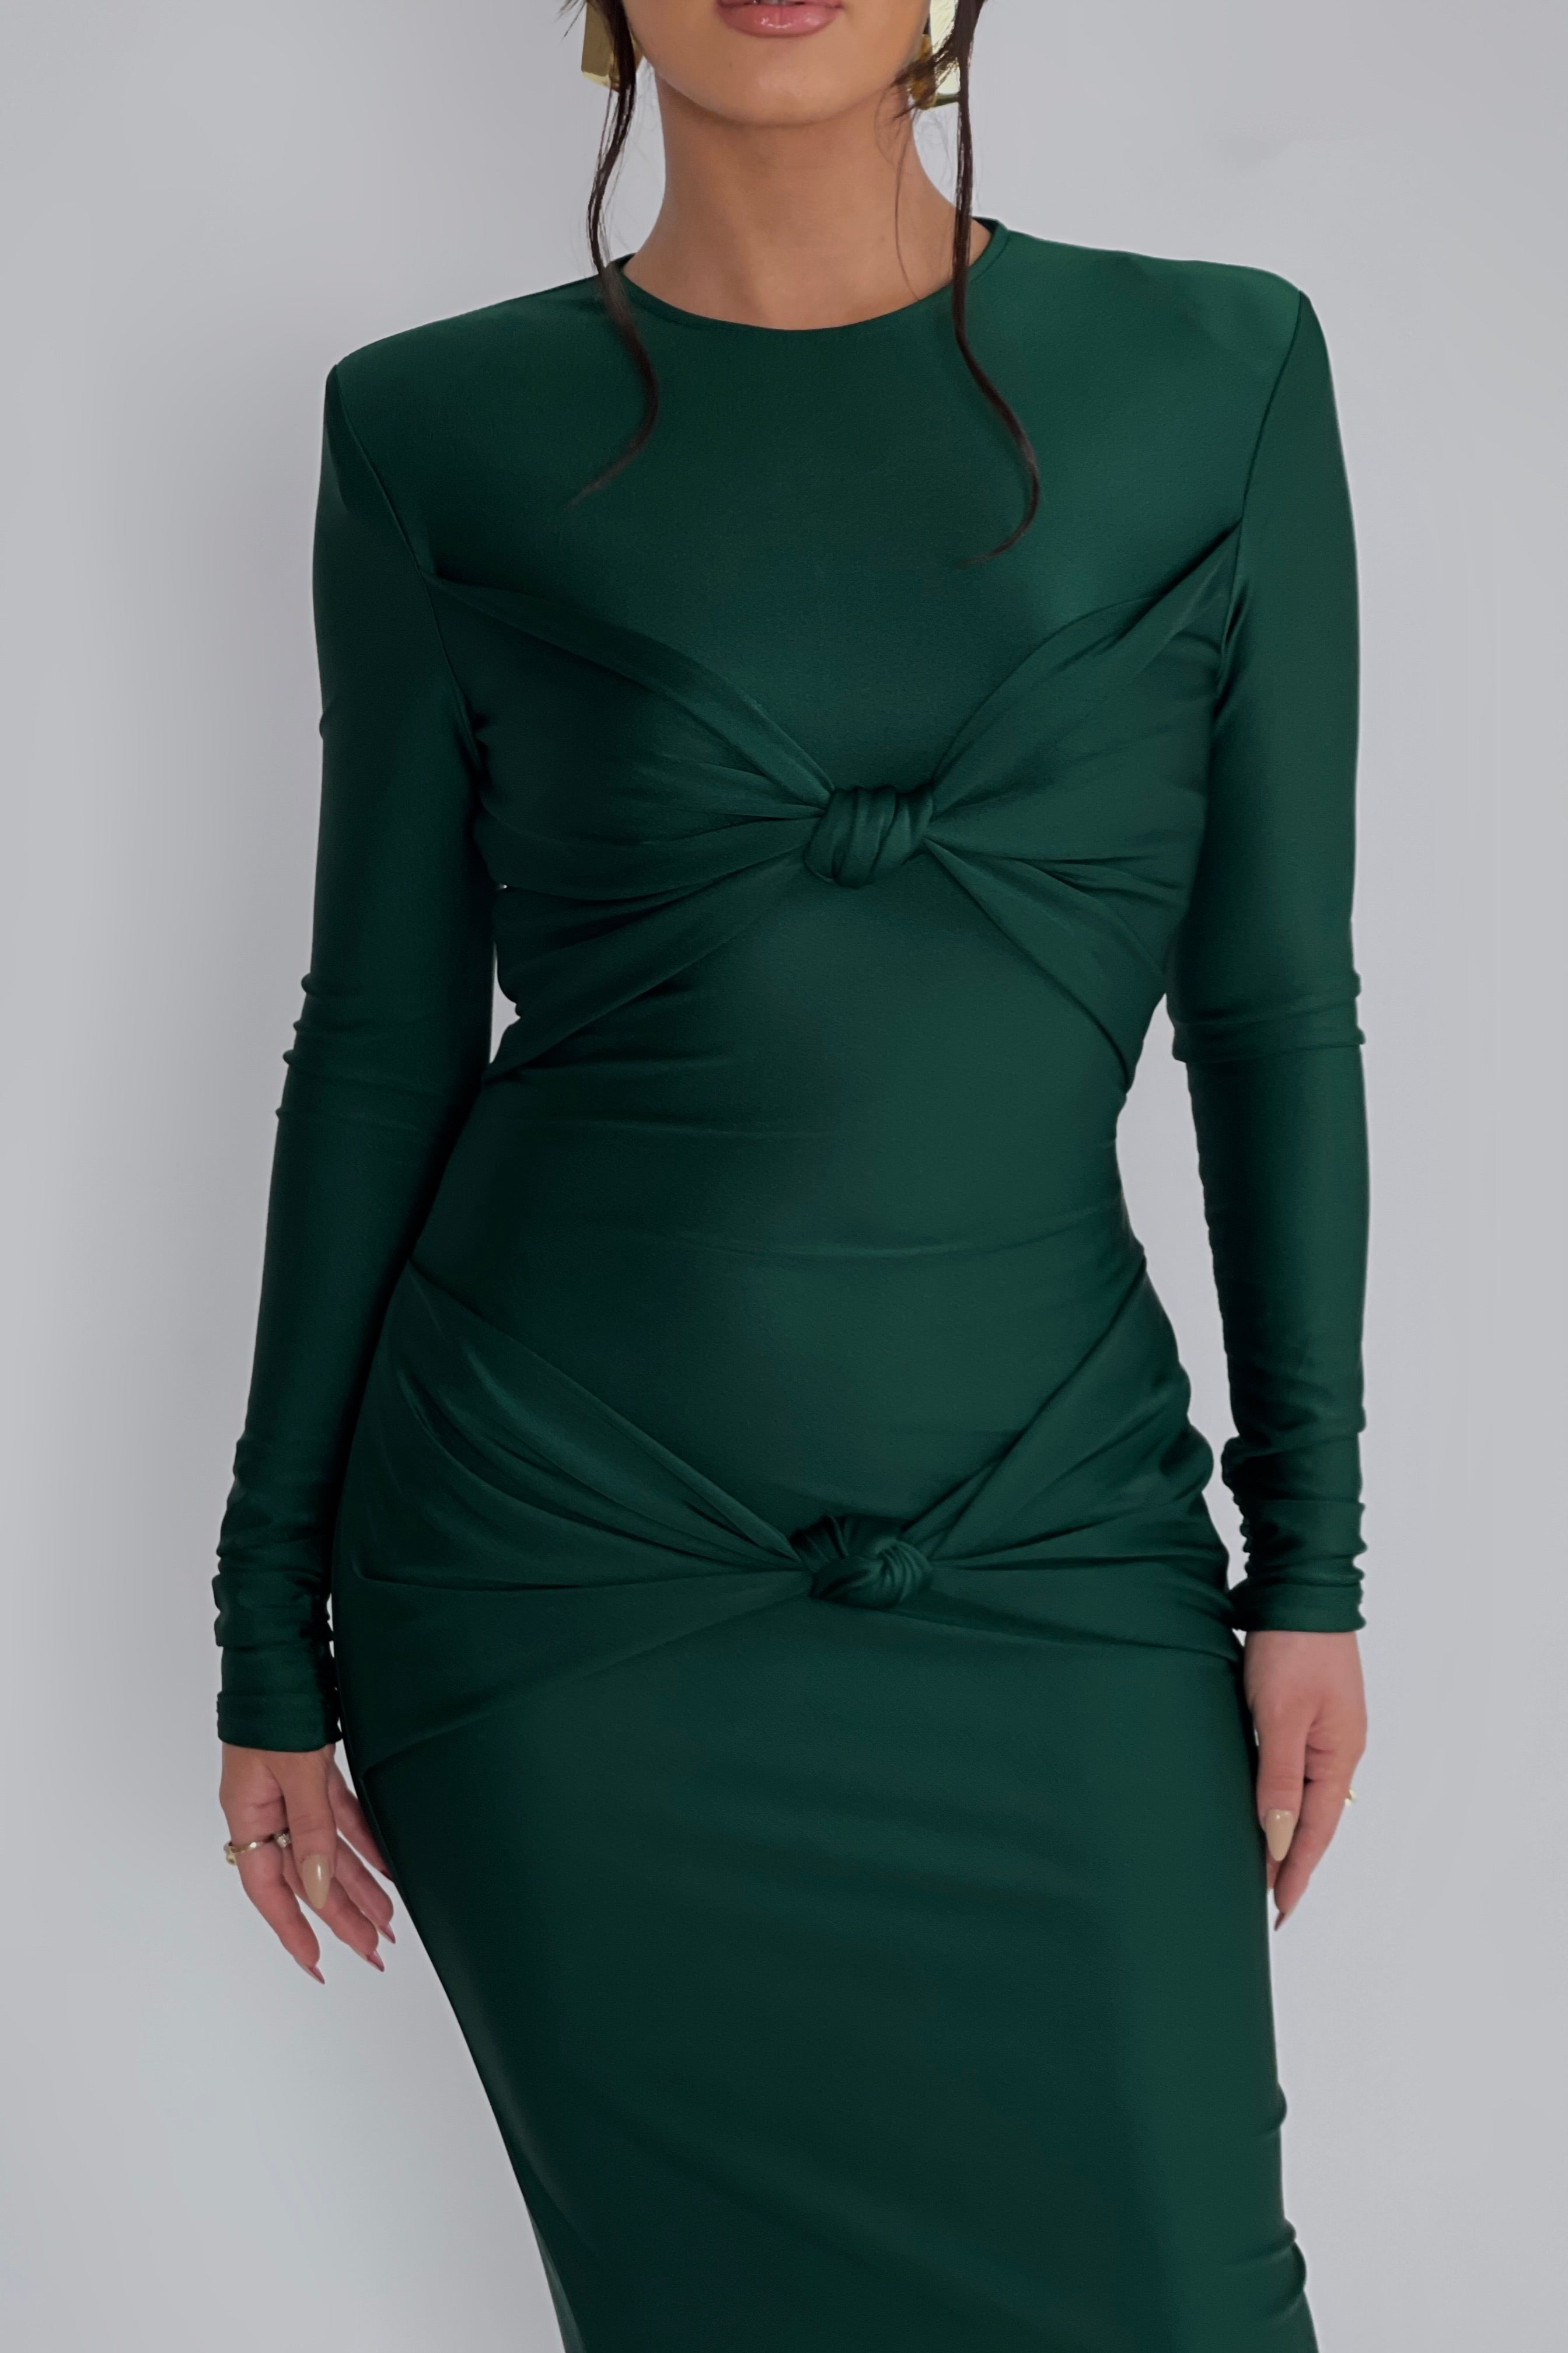 Veronica Hunter Green Dress